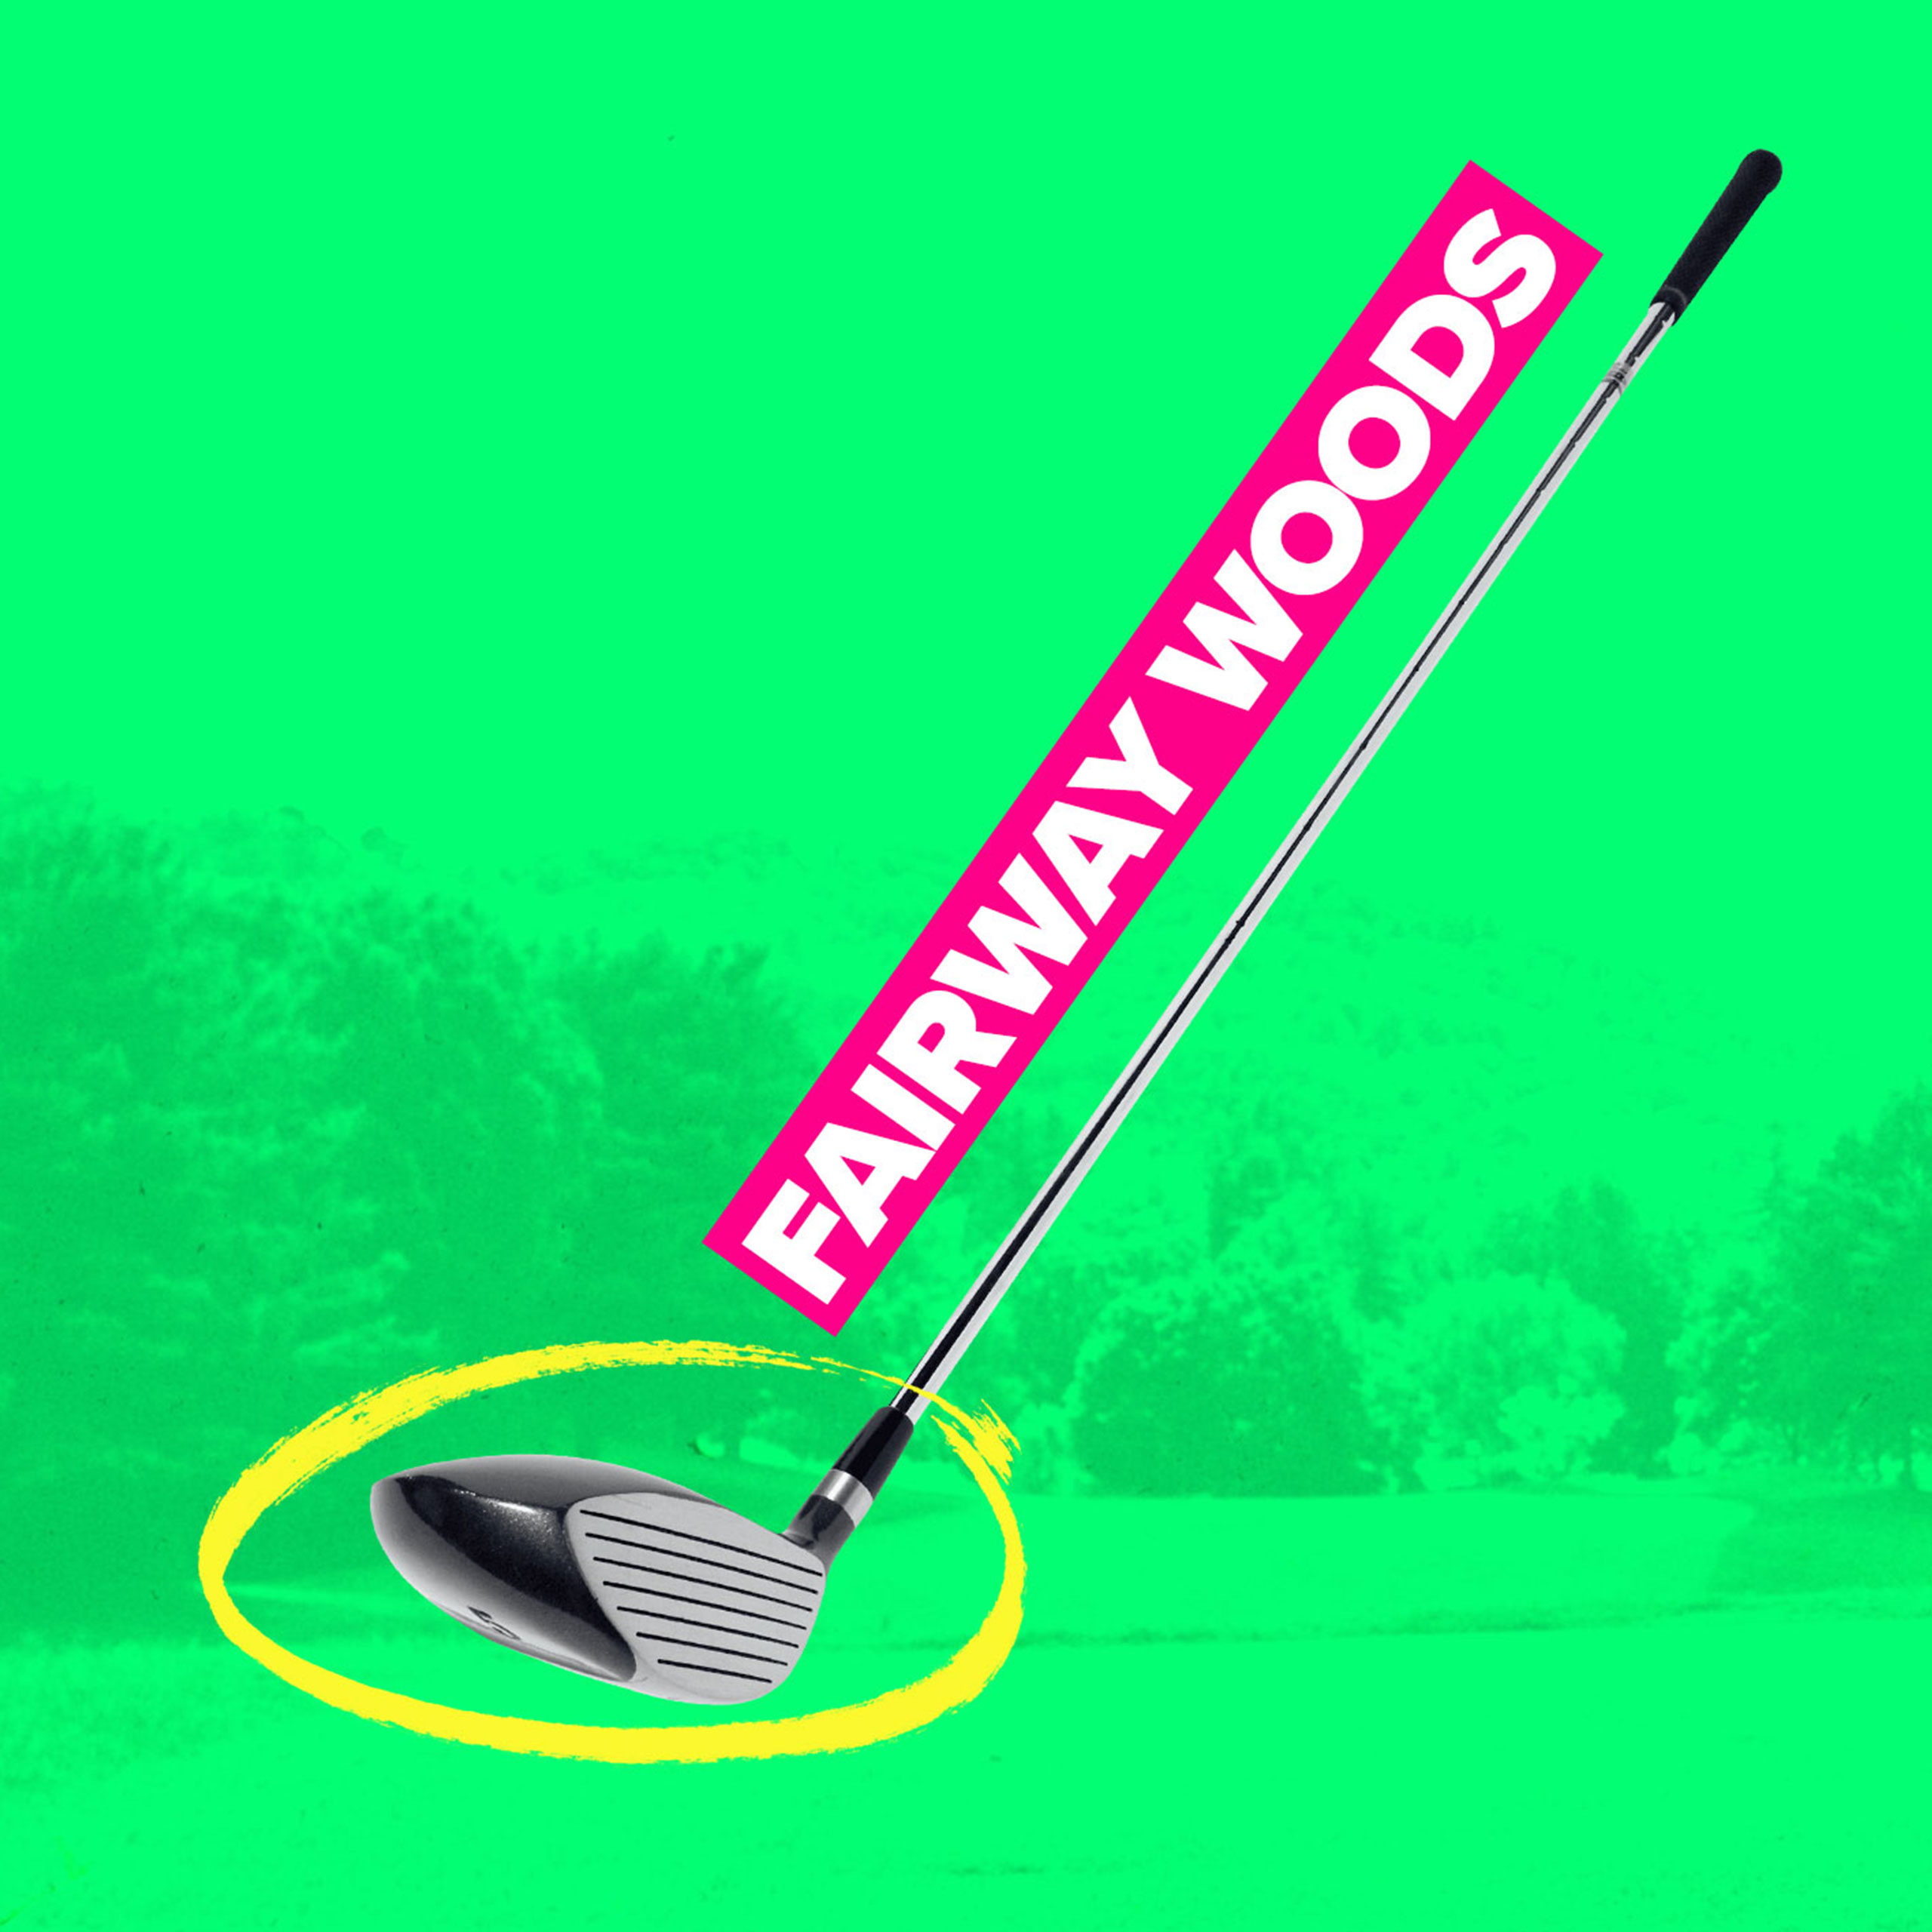 Fairway golf club